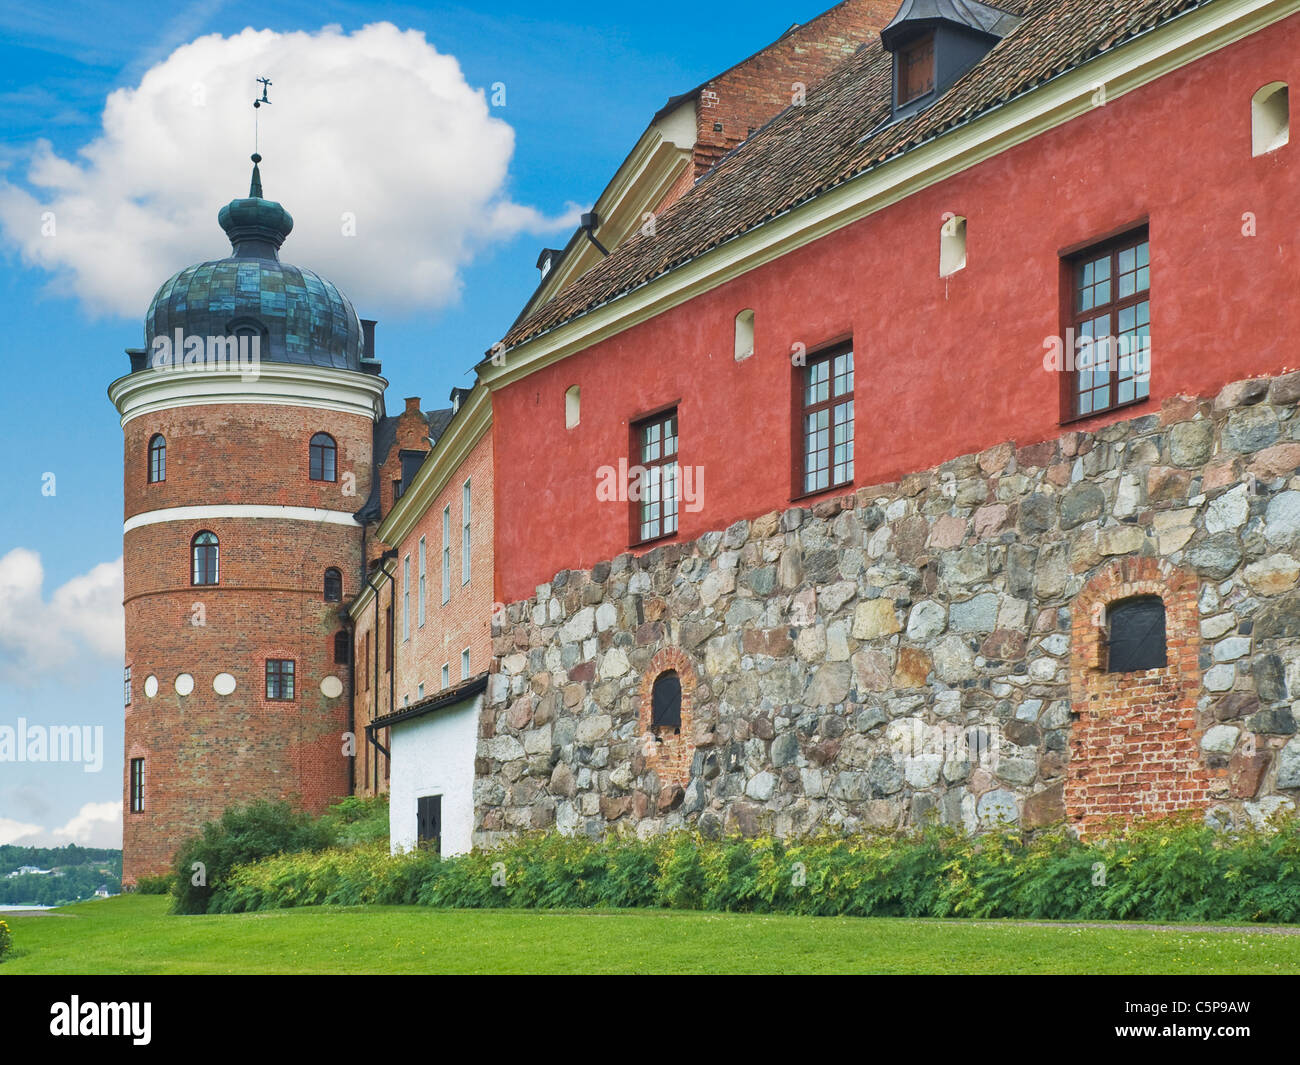 1537 construyeron el Castillo de Gripsholm de Gustav I. Wasa Strängnäs municipio, condado de Södermanland, Suecia, Europa Foto de stock